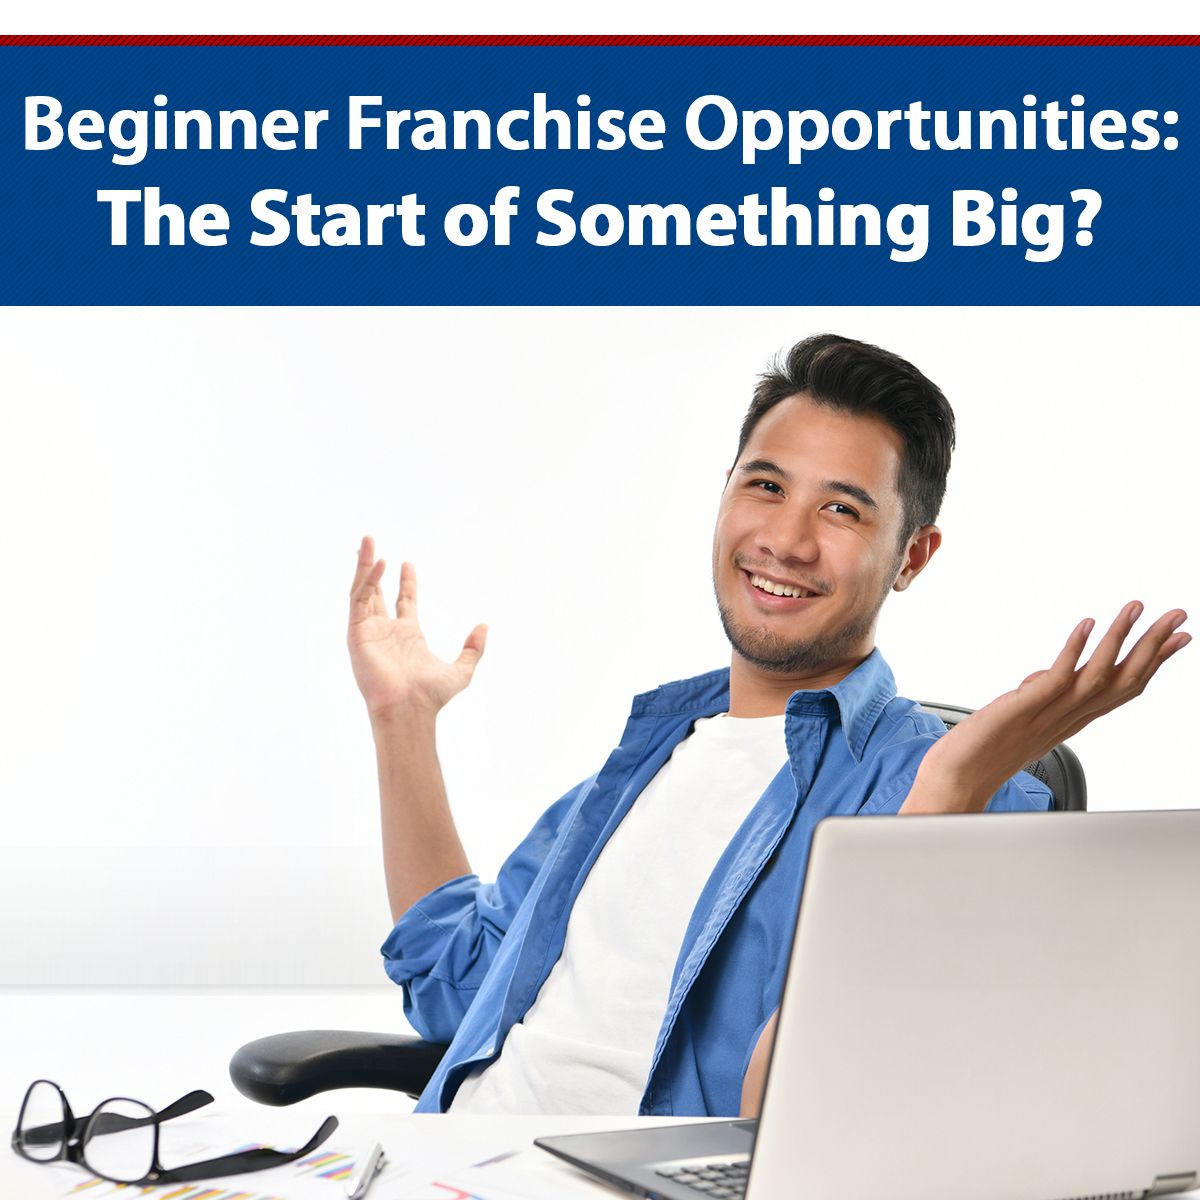 Beginner Franchise Opportunities: The Start of Something Big?